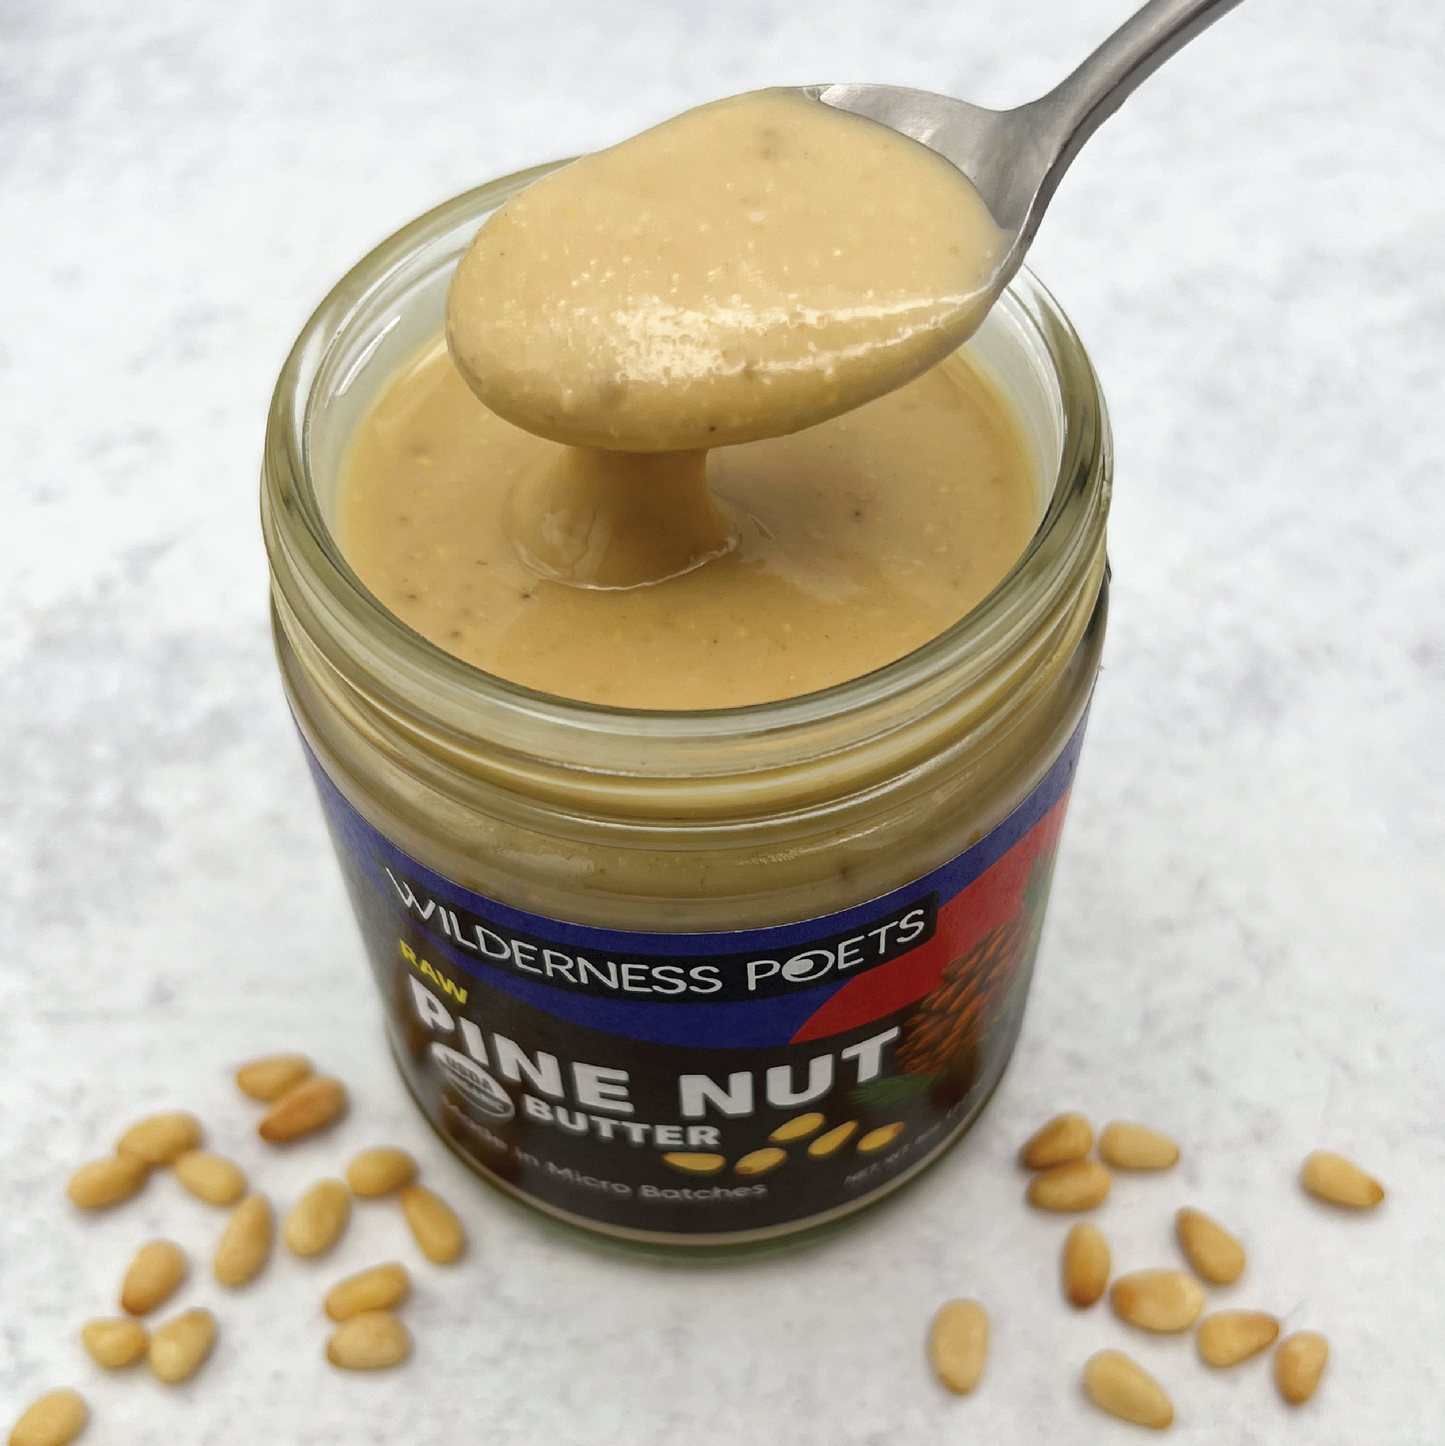 Pine Nut Butter - Organic